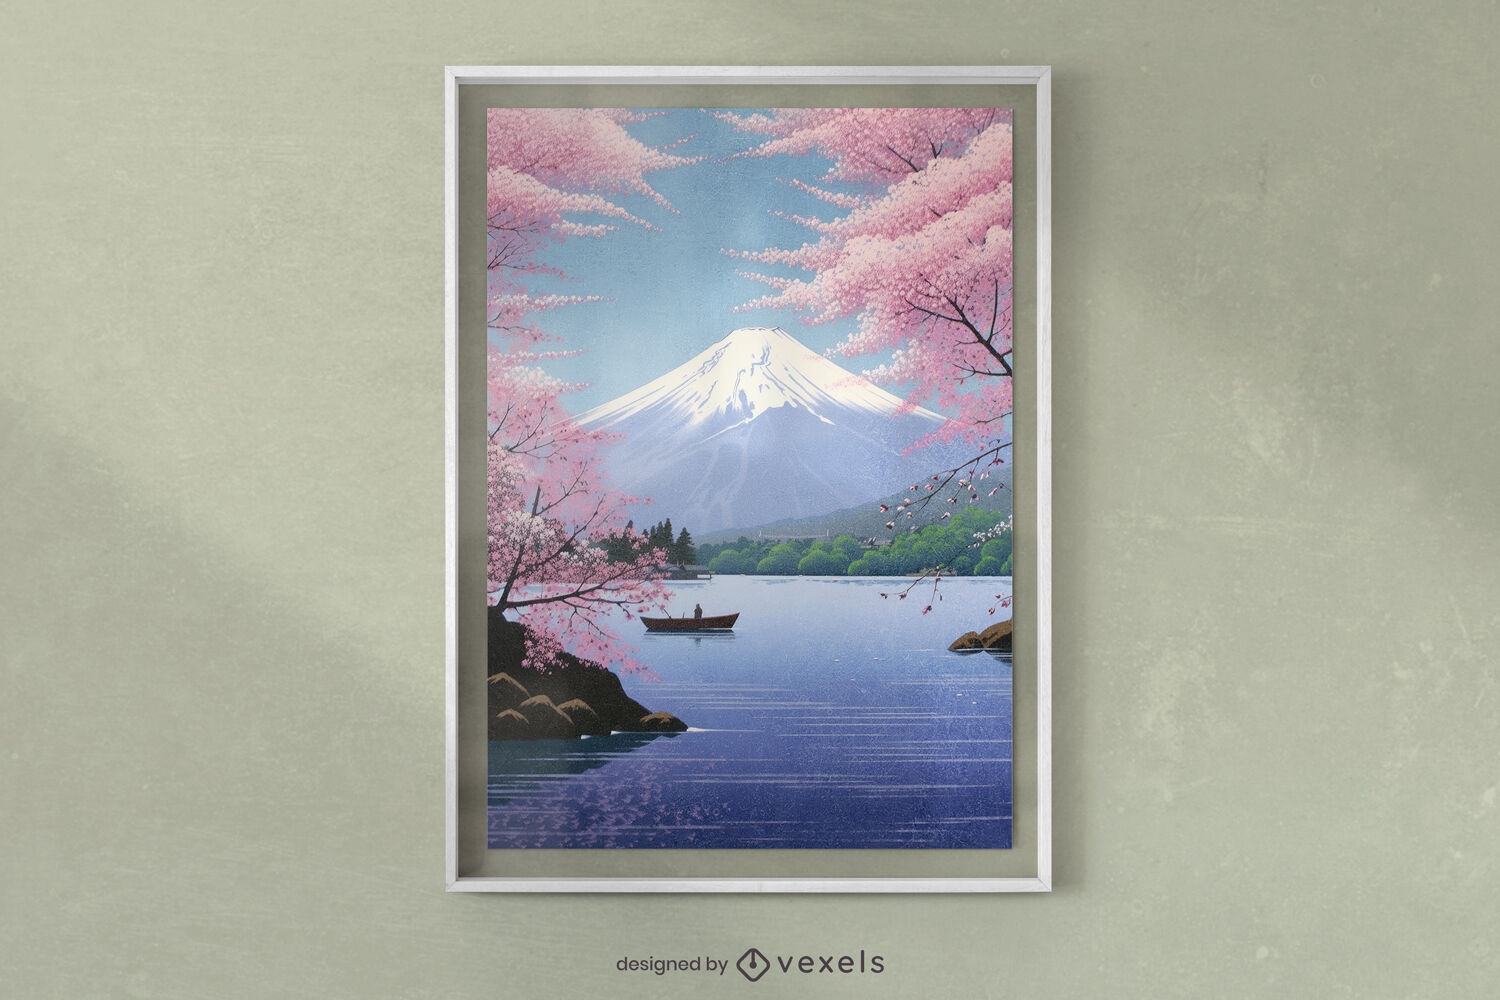 Mount fuji japanese landscape poster design